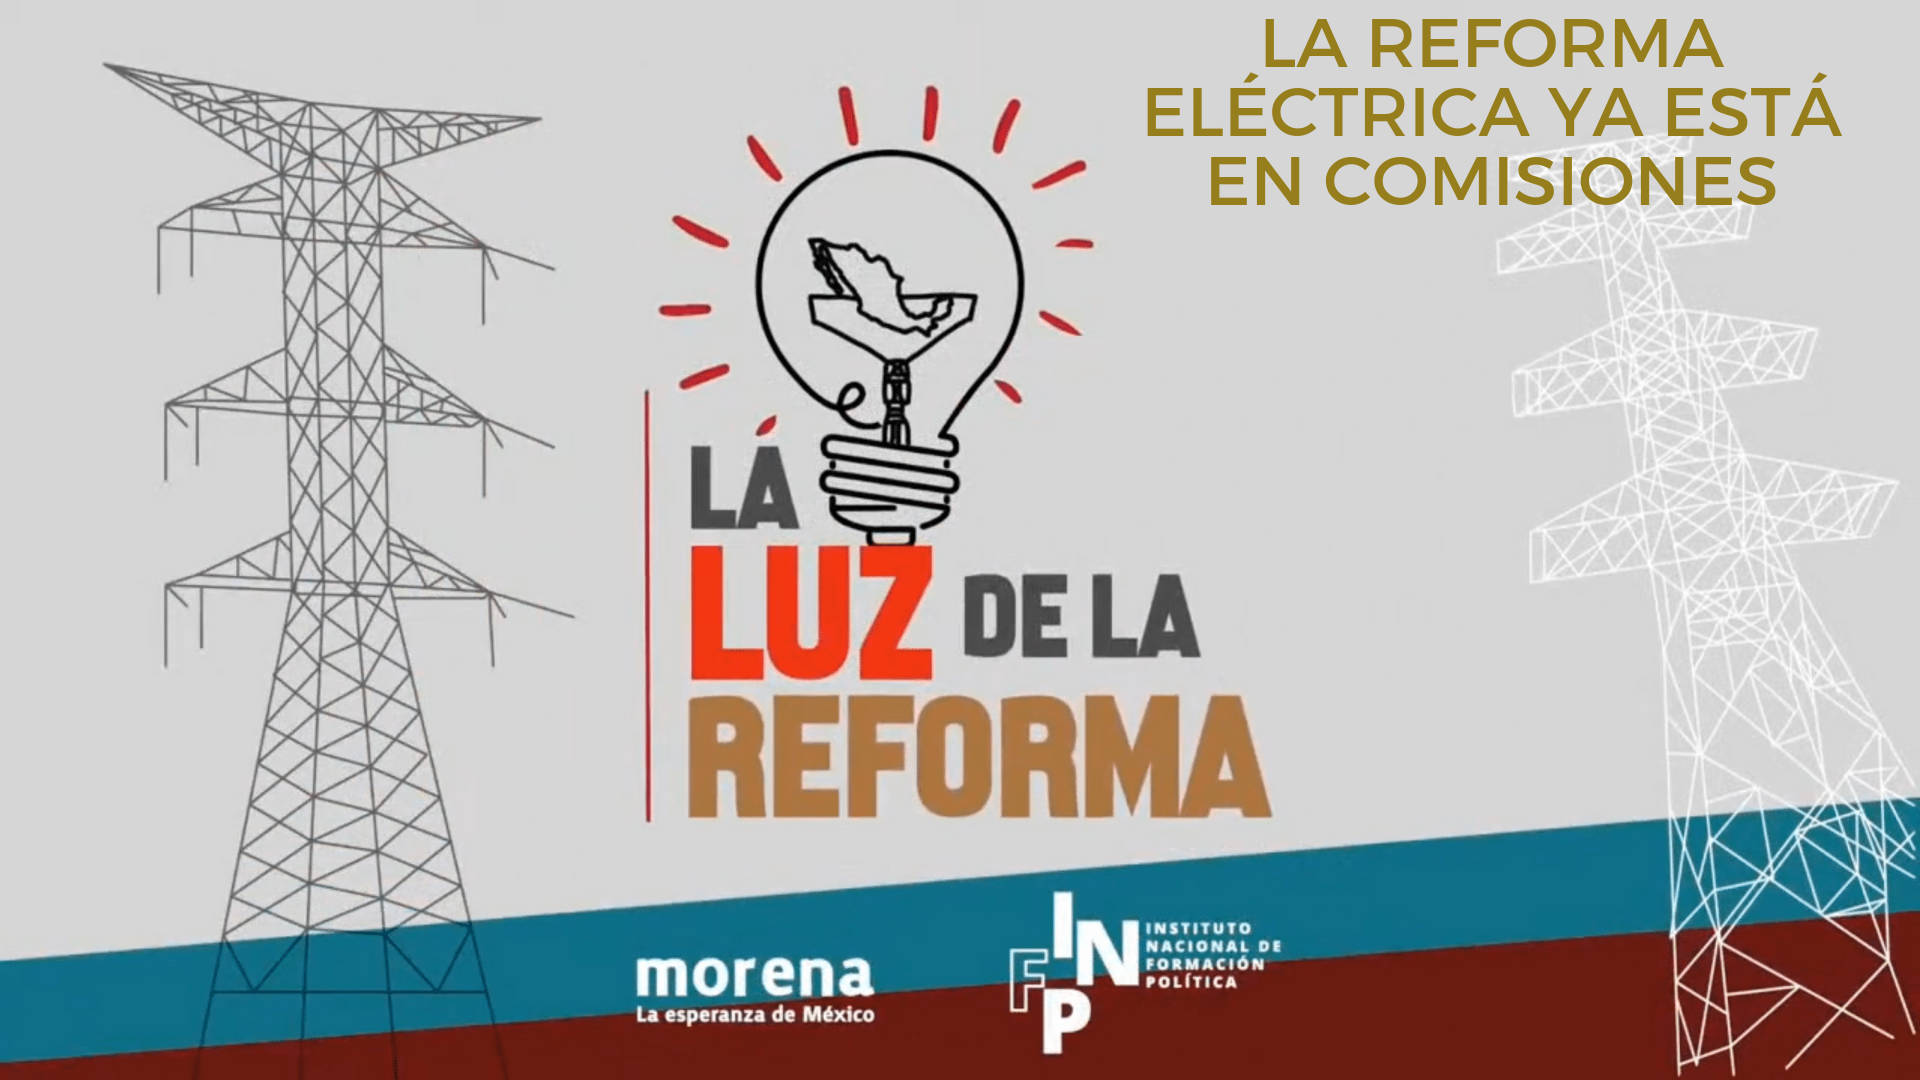 La luz de la Reforma – La reforma eléctrica ya está en comisiones